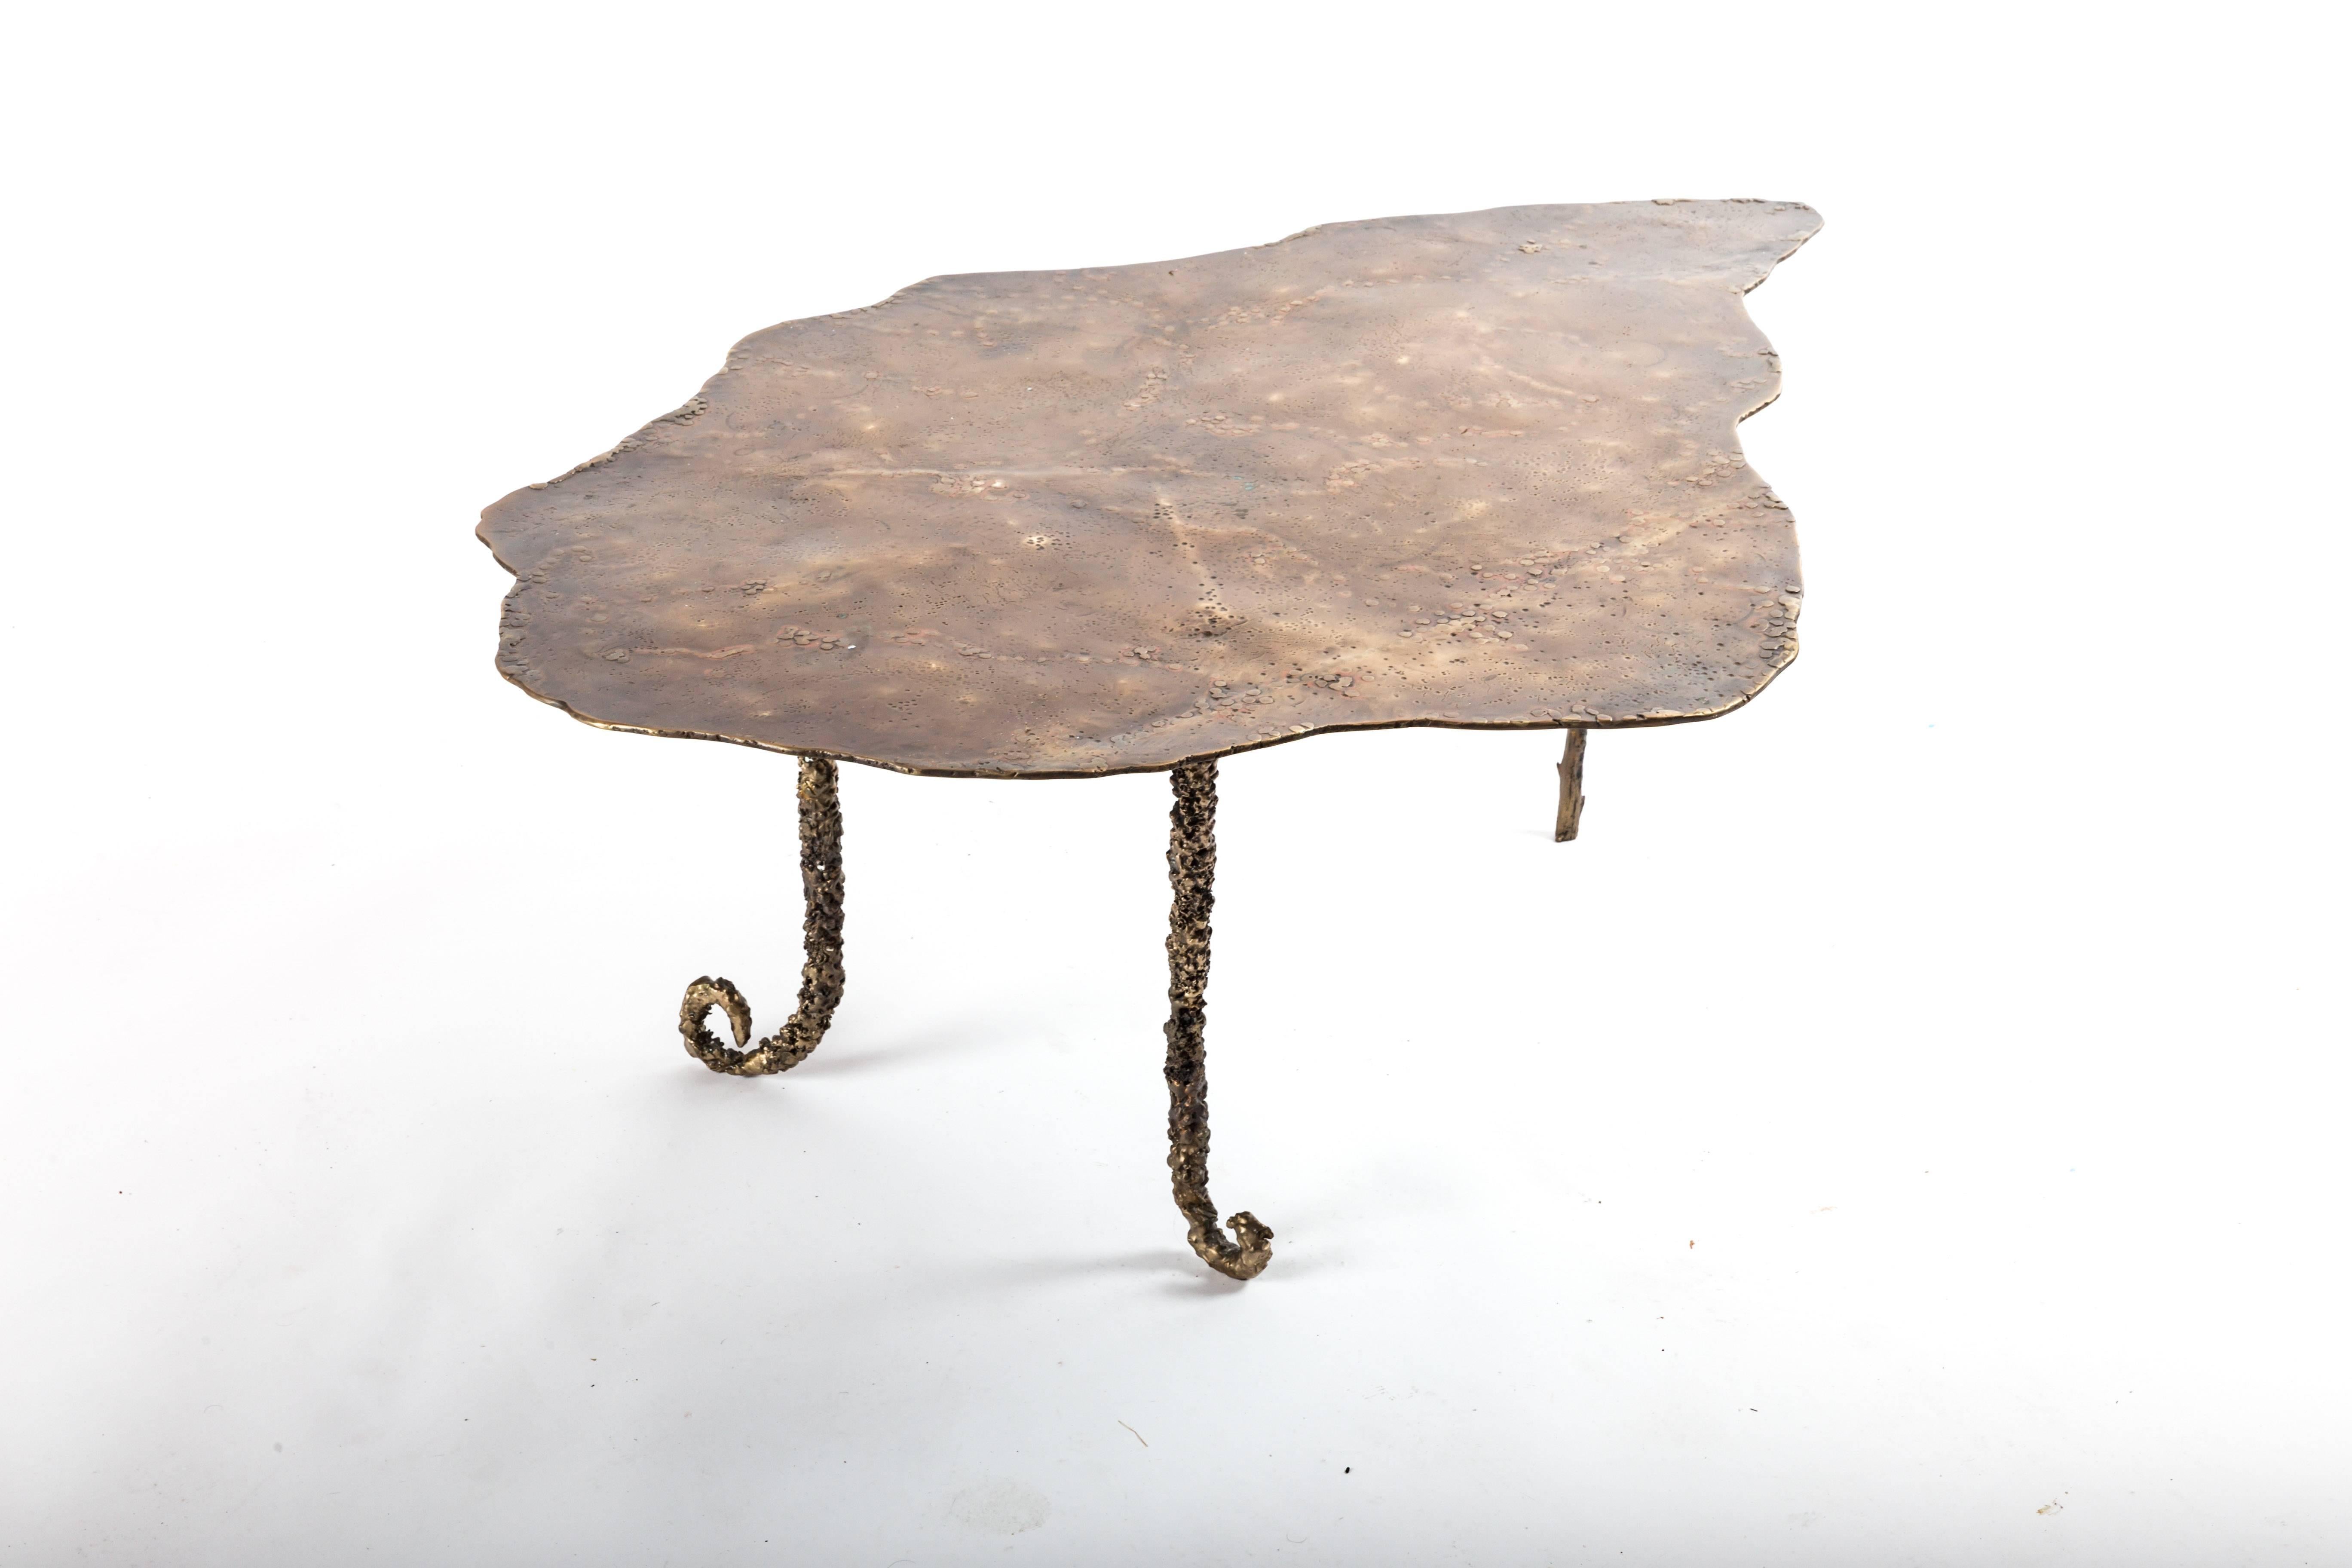 Table basse en bronze coulé faite sur mesure. Conçu par Athena Calderone et fabriqué par Vanessa Monk de Monk Designs. La base de la table a été inspirée et moulée à partir de tiges de plantes trouvées dans la nature, ce qui donne aux pieds leur